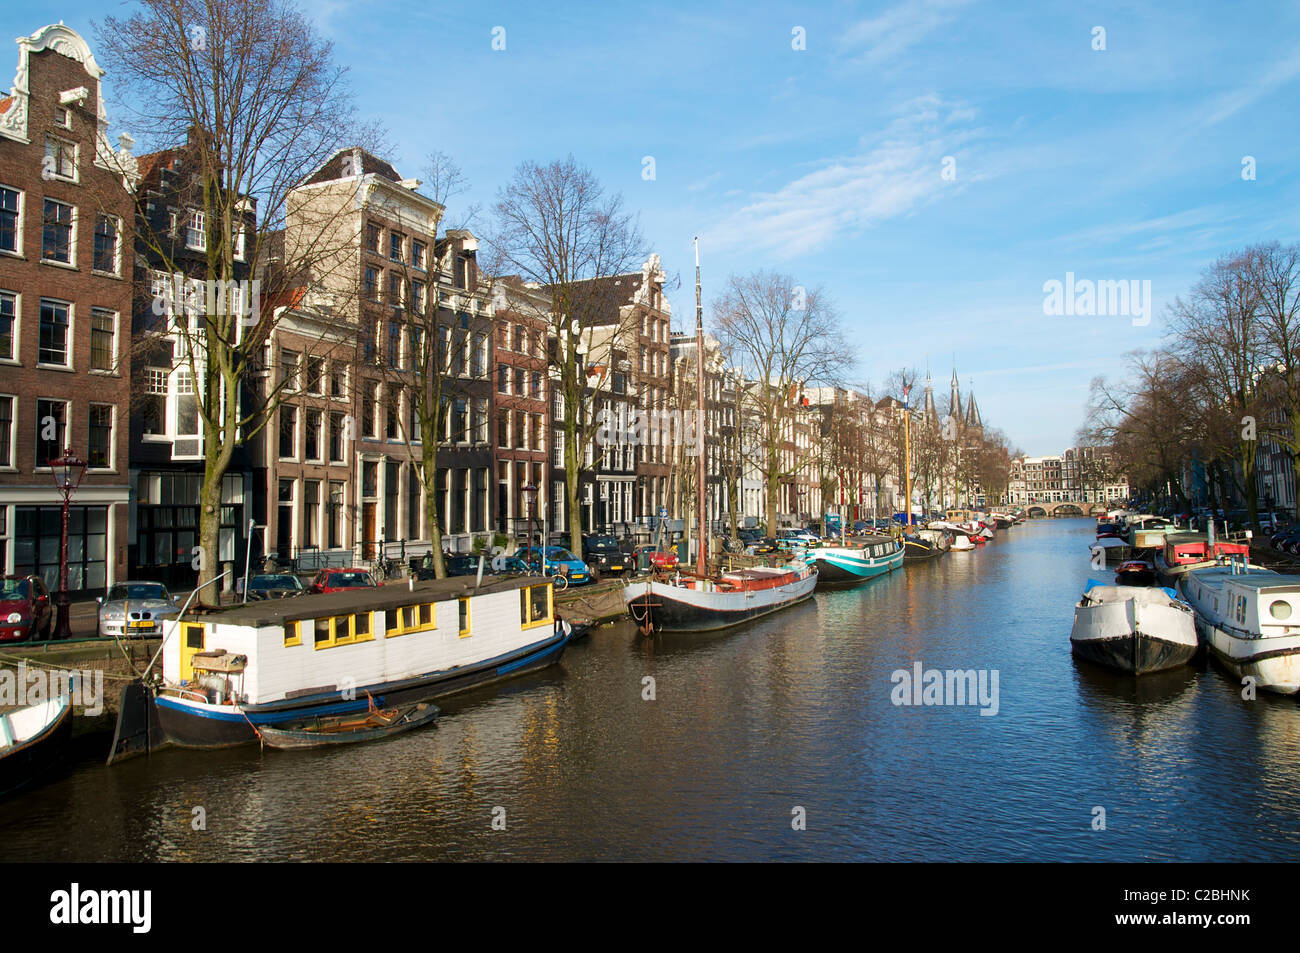 Canal nel quartiere Jordaan con case galleggianti in inverno. Foto Stock